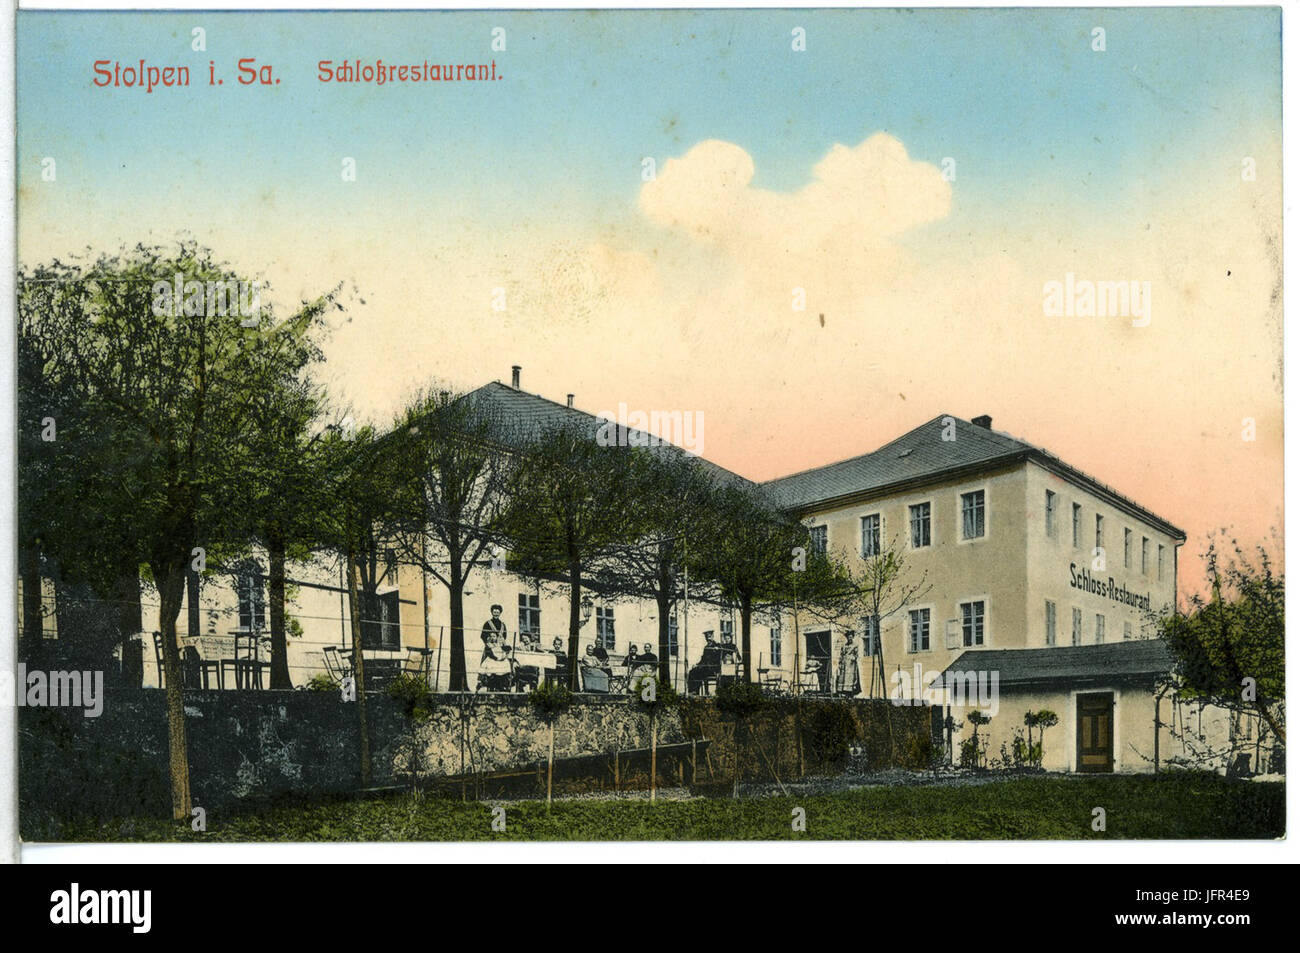 14046-Stolpen-1912-Schloßrestaurant-Brück & Sohn Kunstverlag Stock Photo